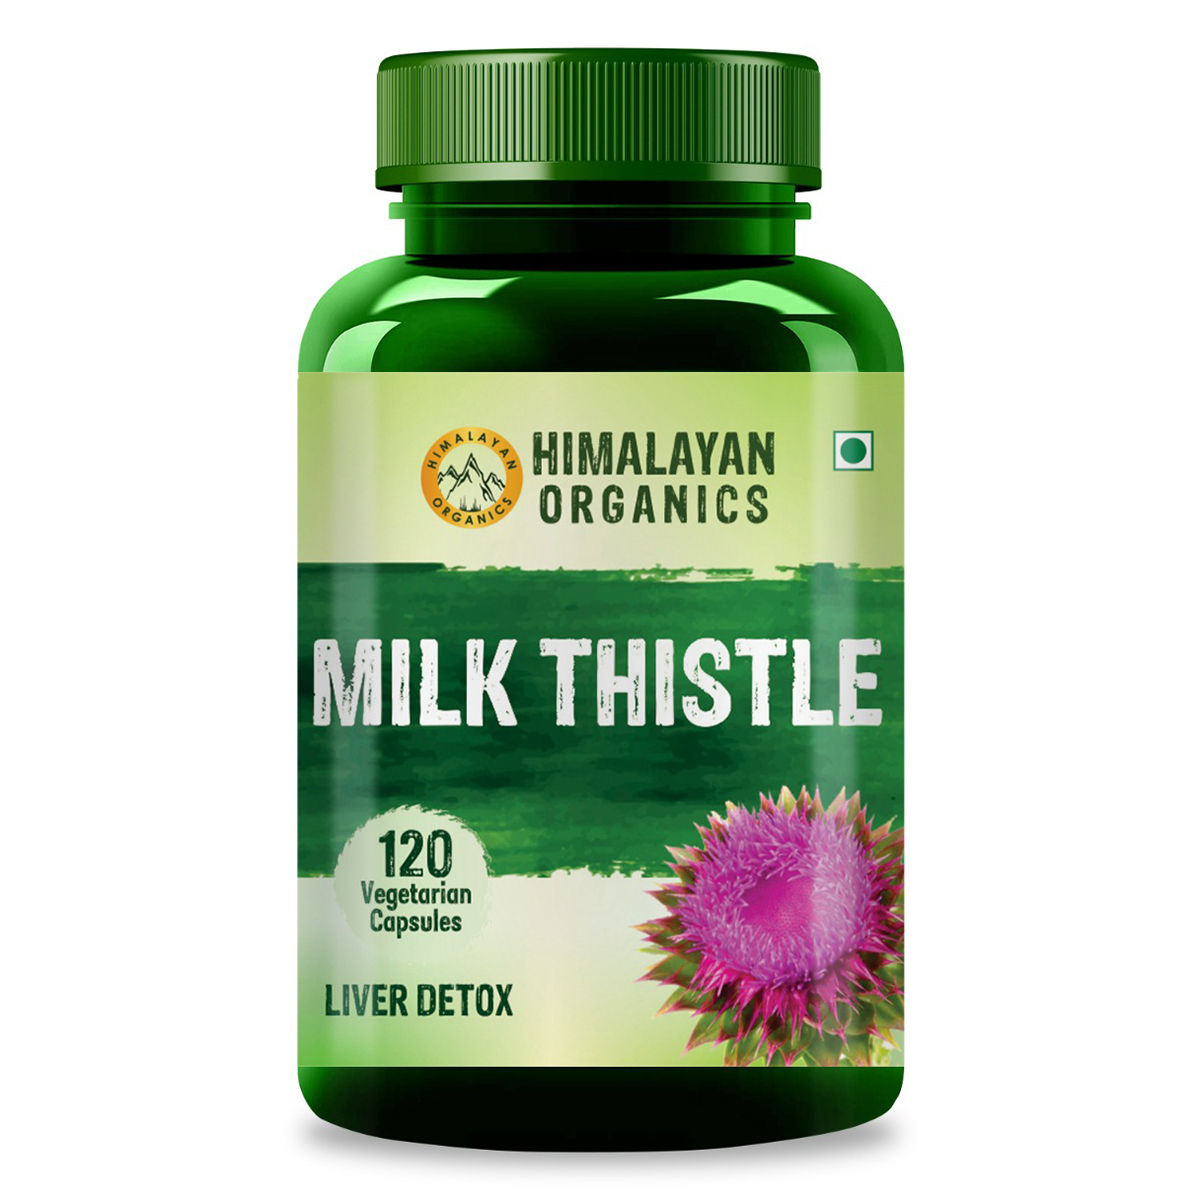 Buy Himalayan Organics Milk Thistle, 120 Capsules Online